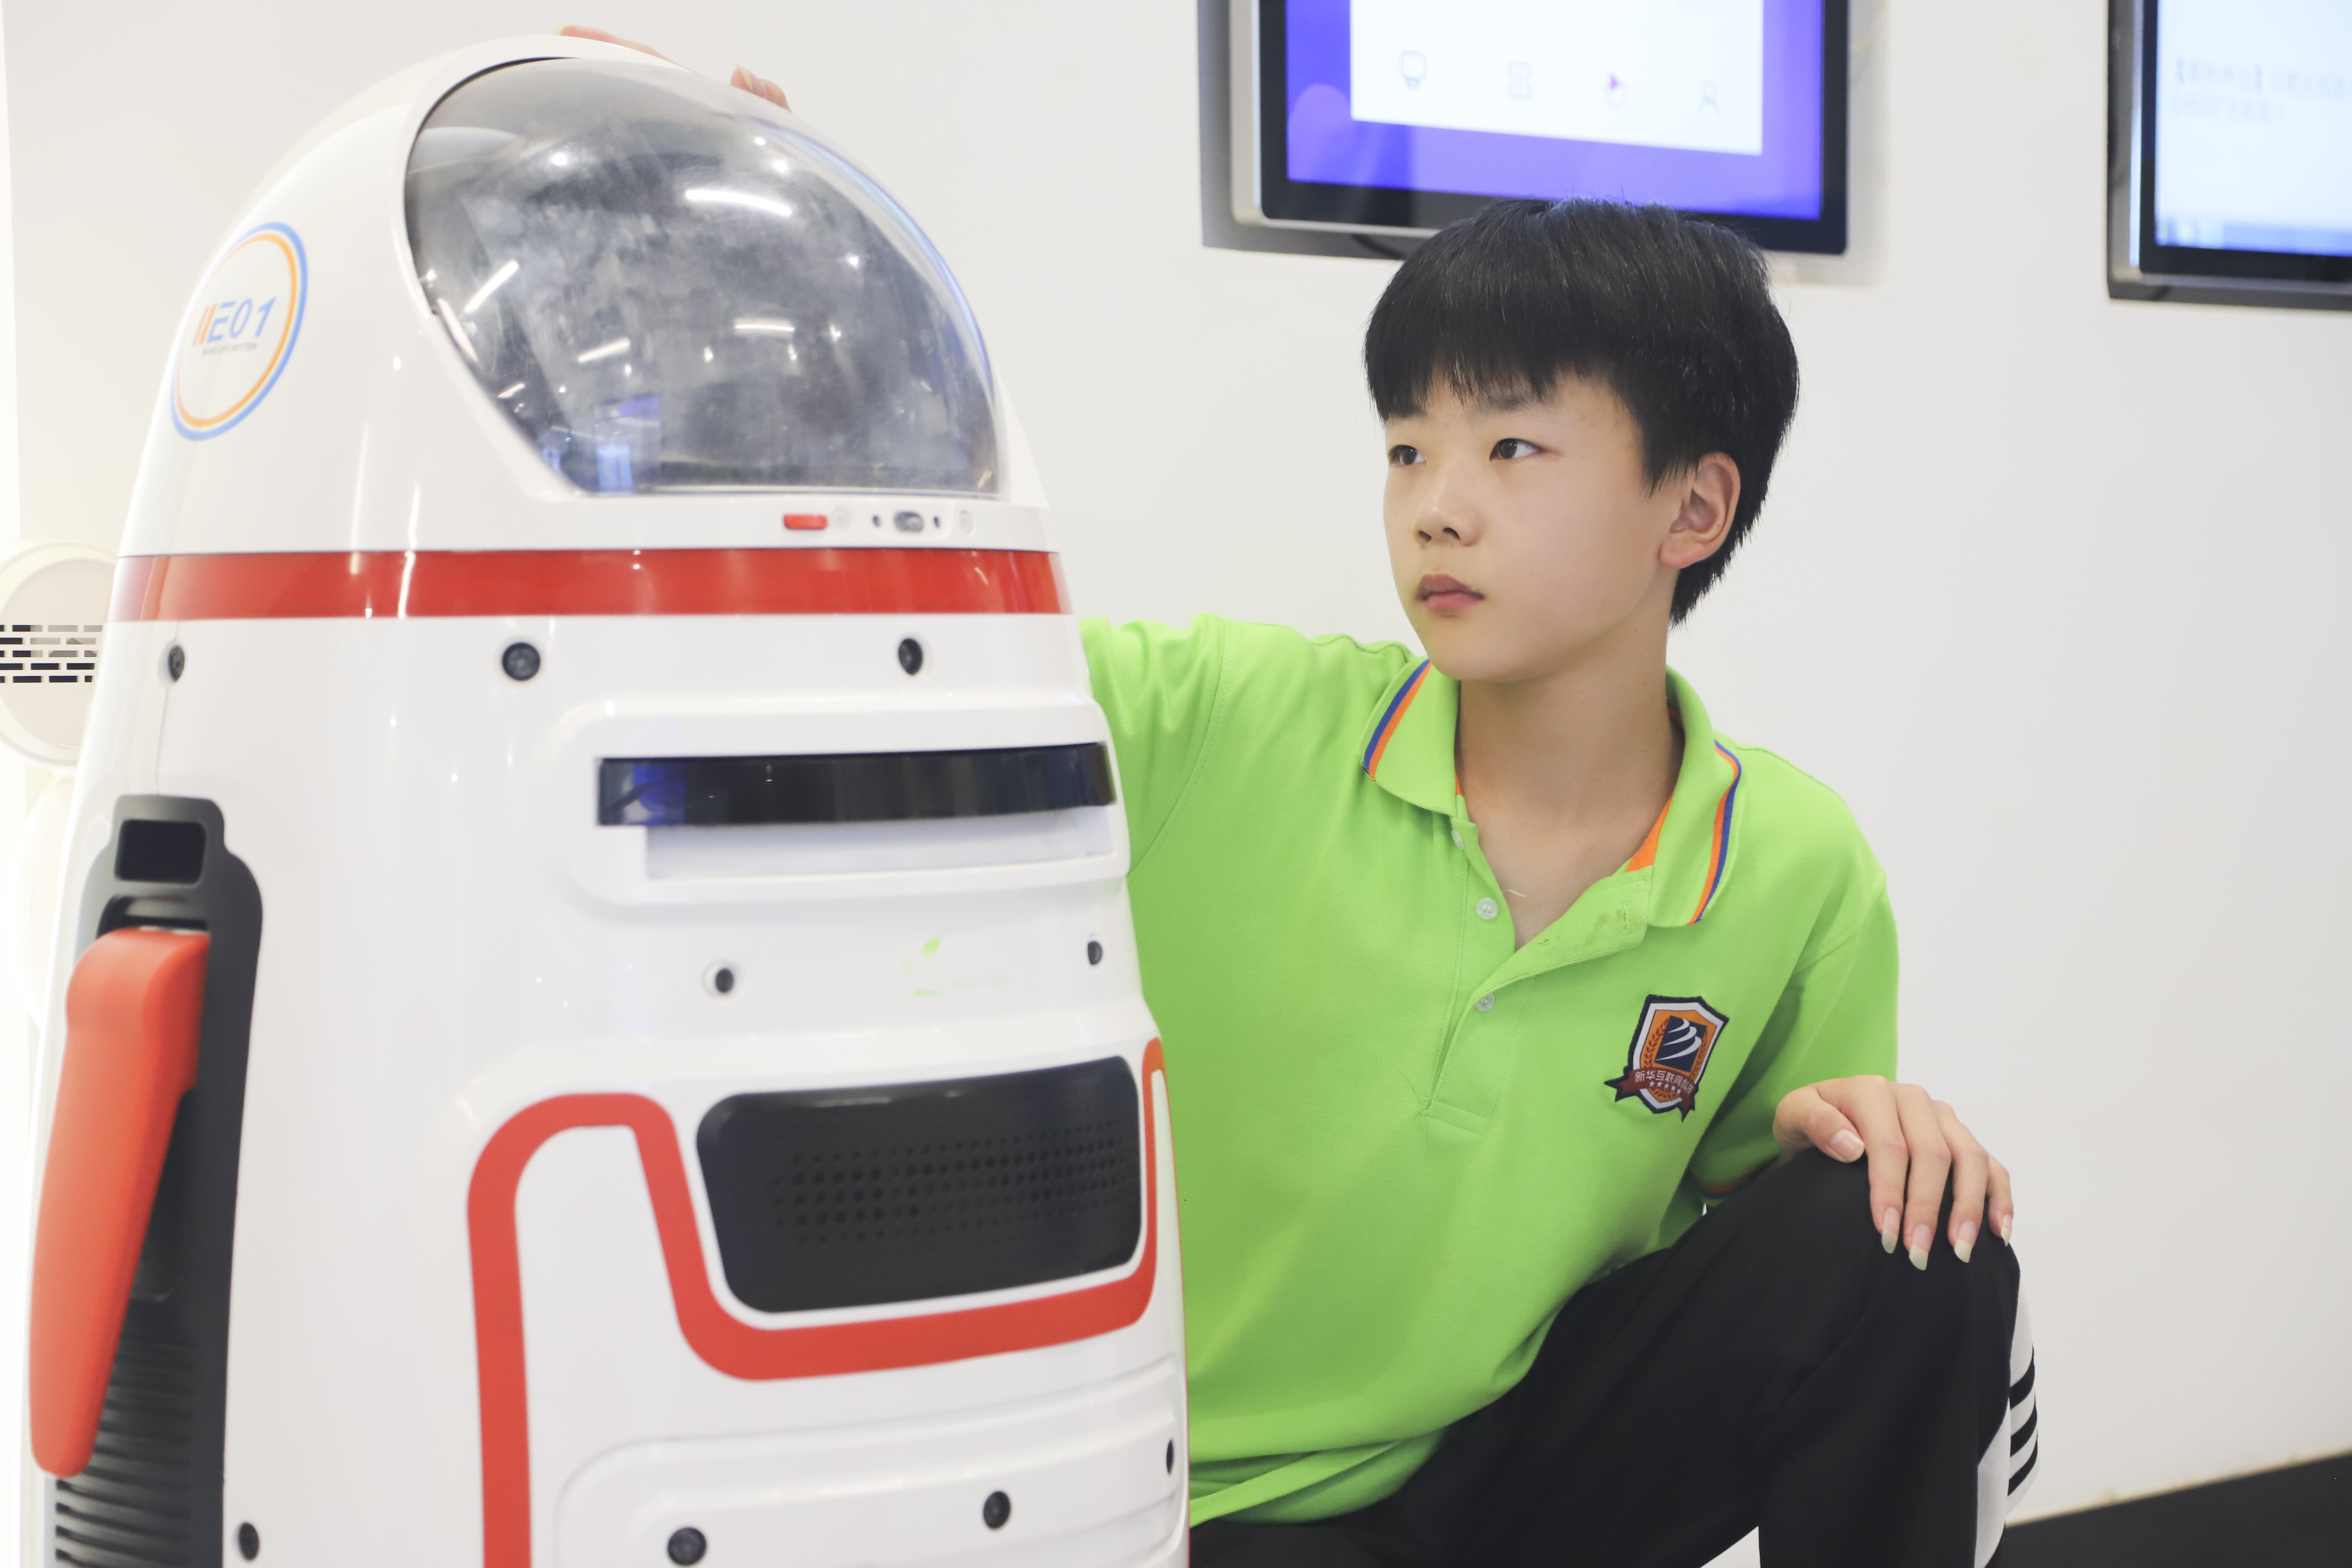 學生與智能機器人互動